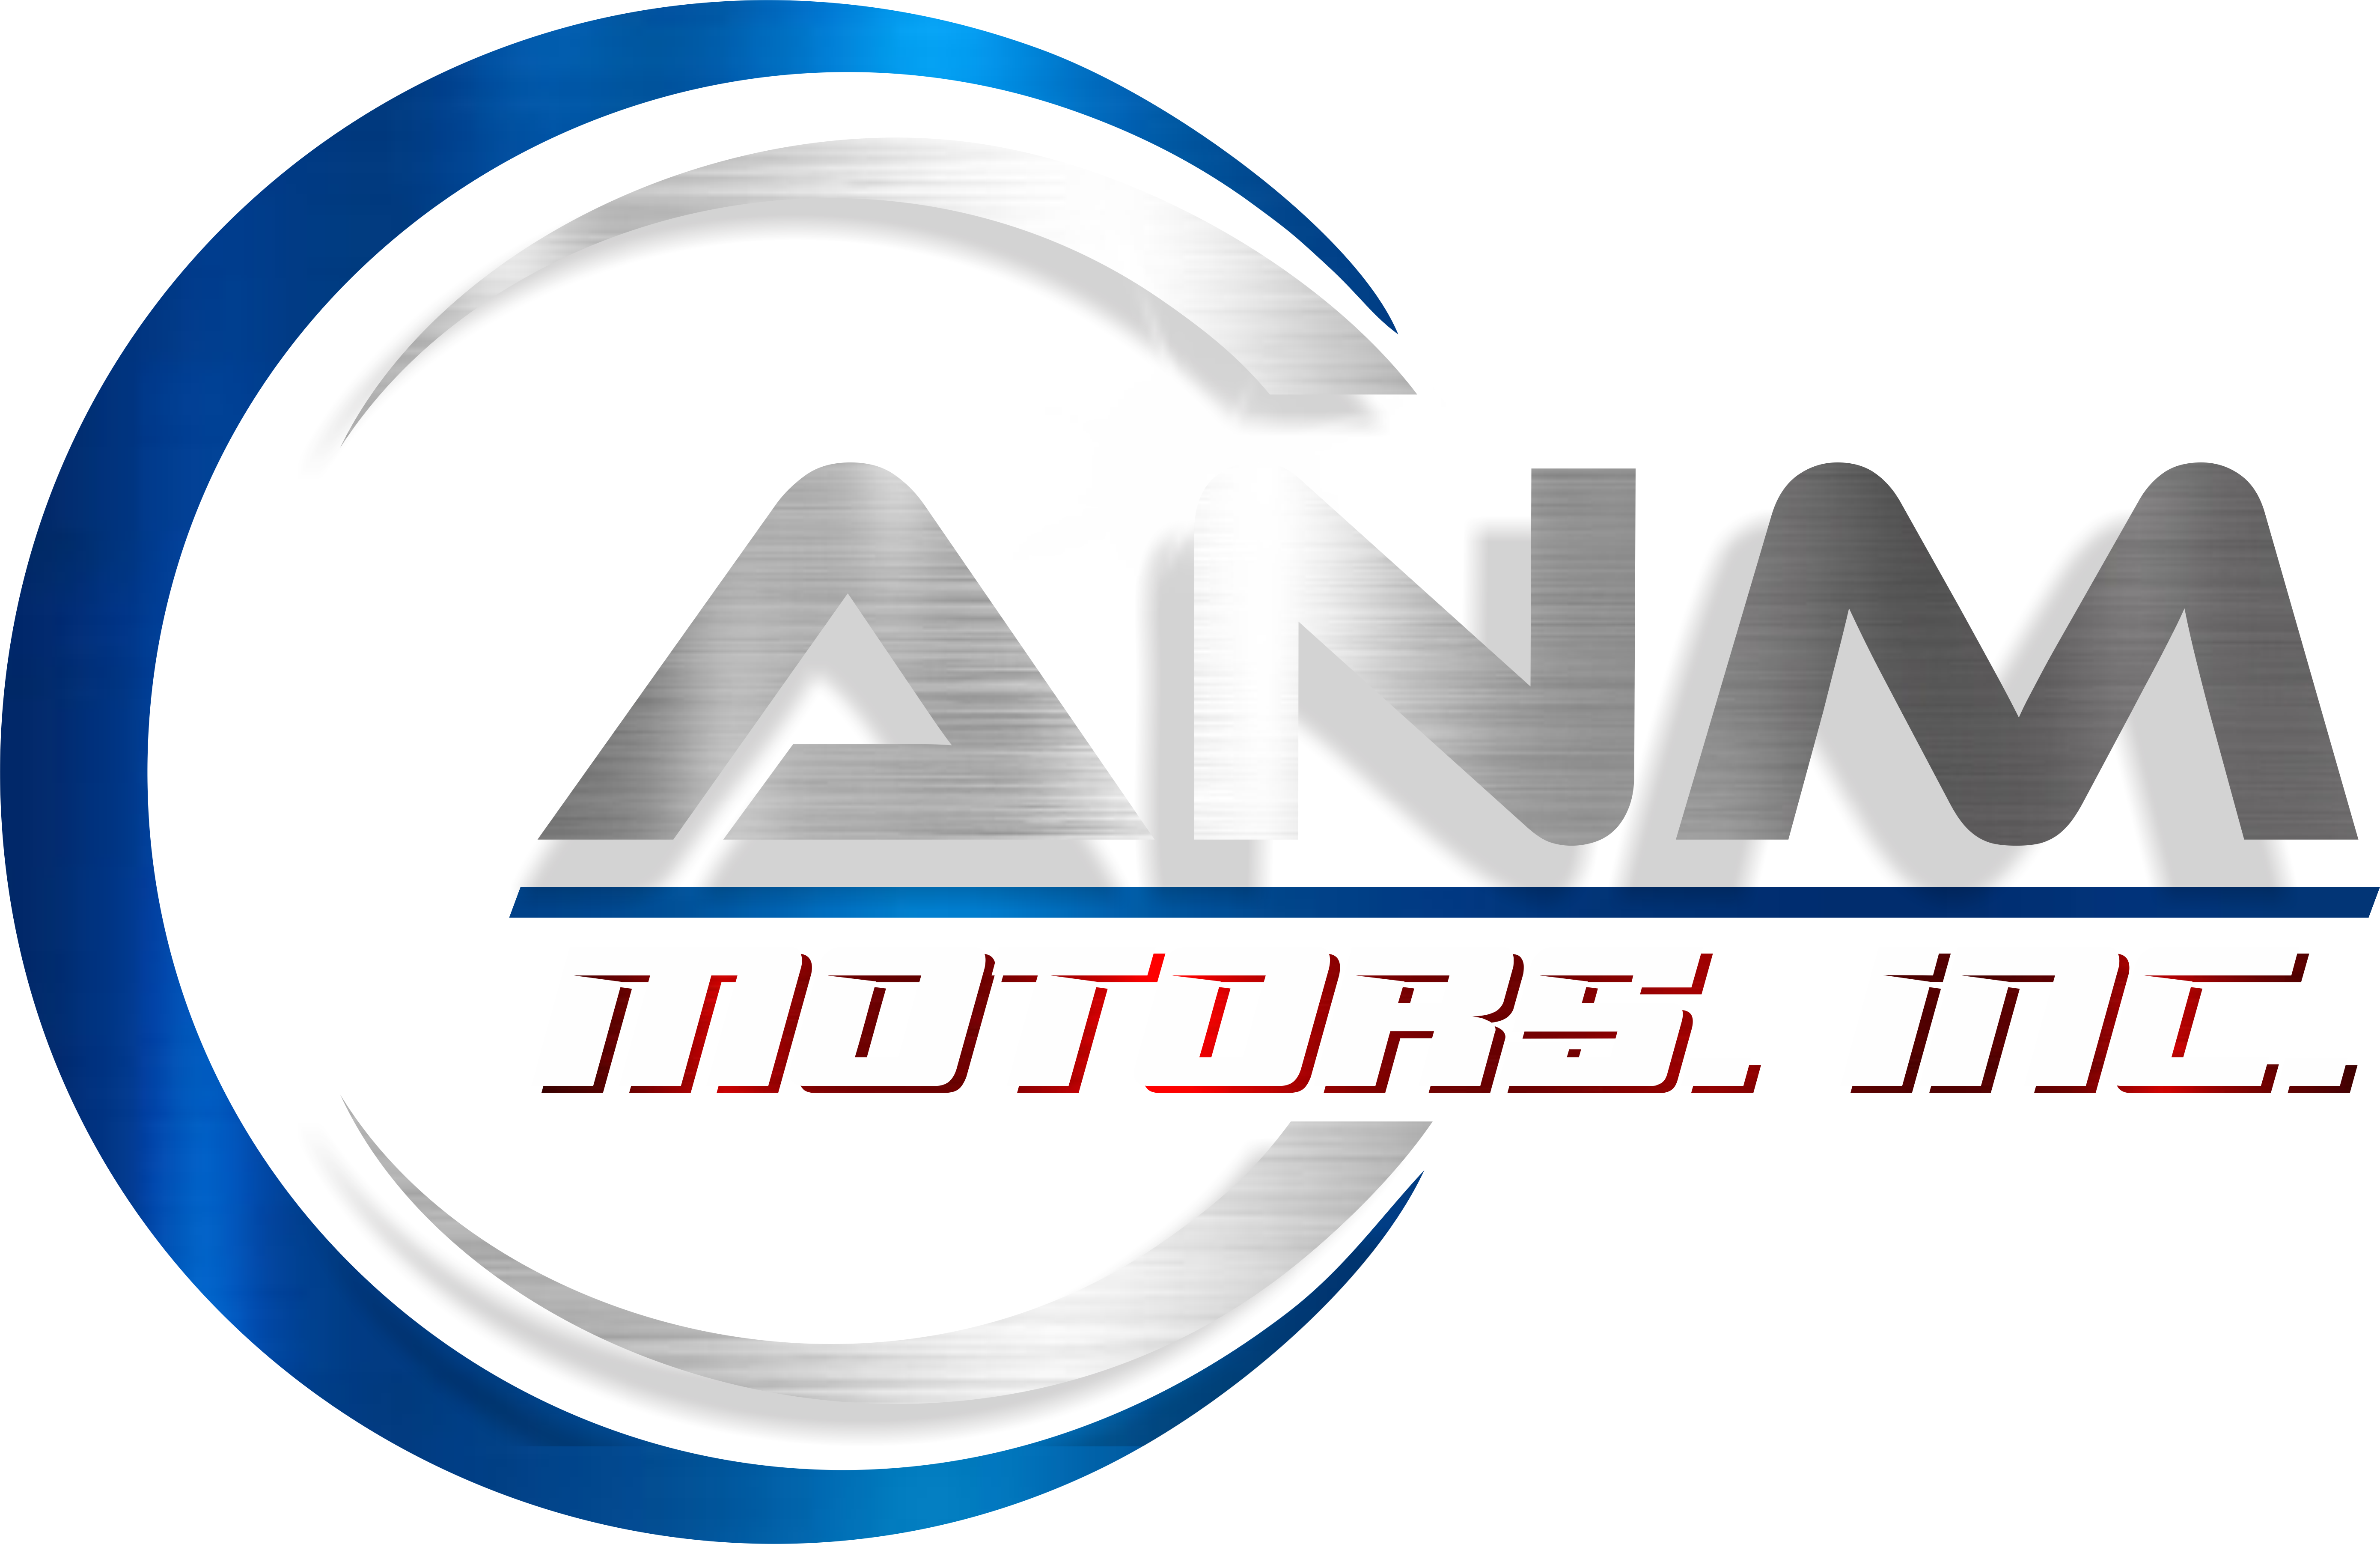 ANM Motors Inc